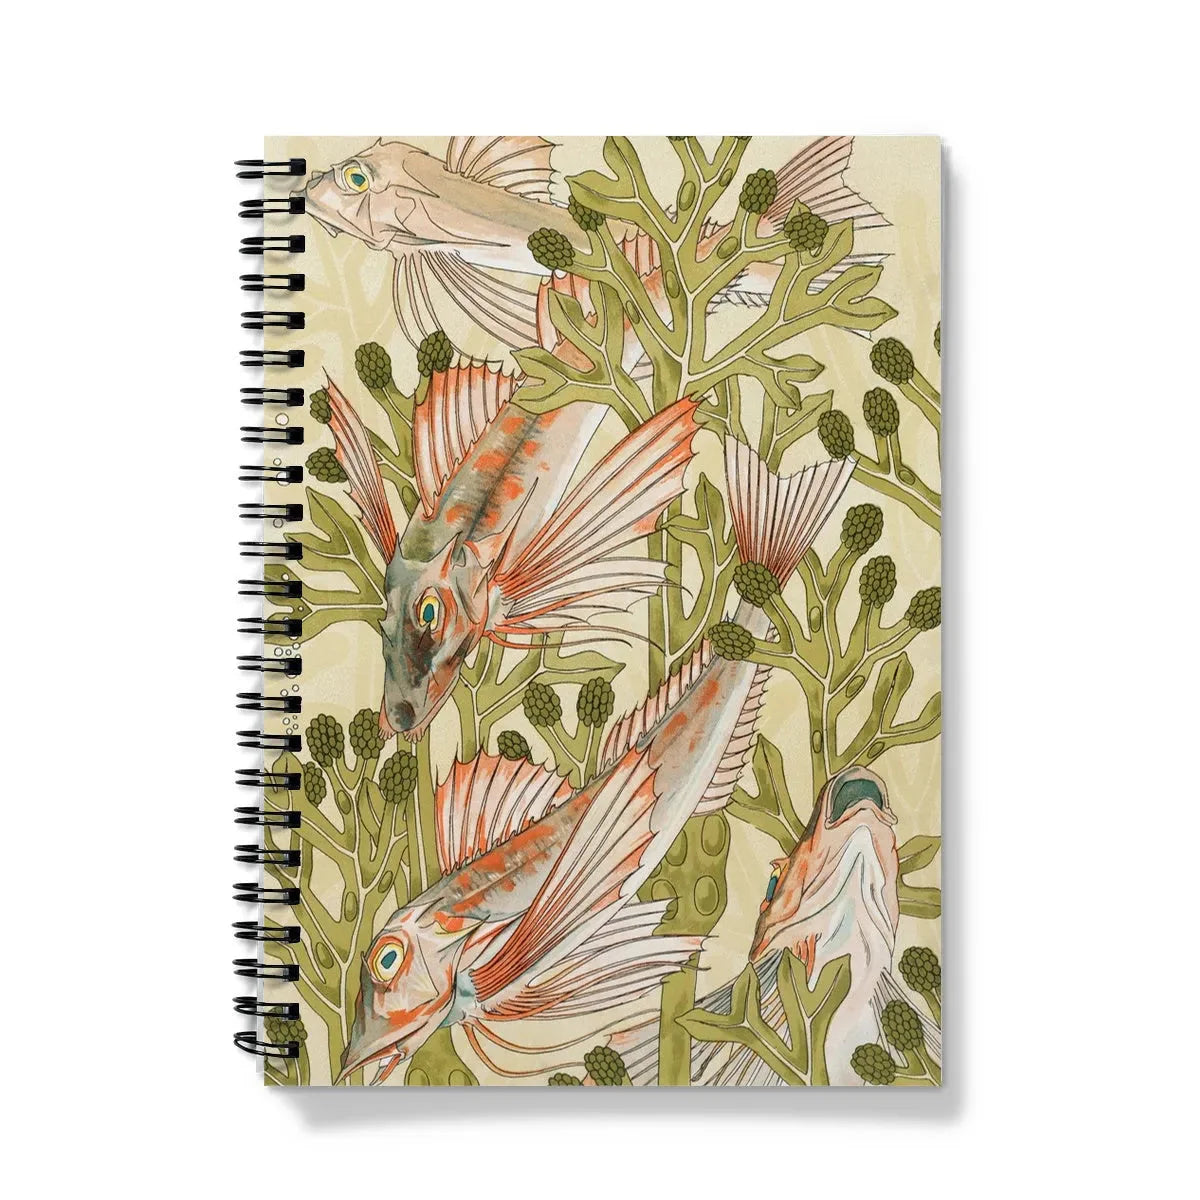 Rouget By Maurice Pillard Verneuil Notebook - A5 - Graph Paper - Notebooks & Notepads - Aesthetic Art